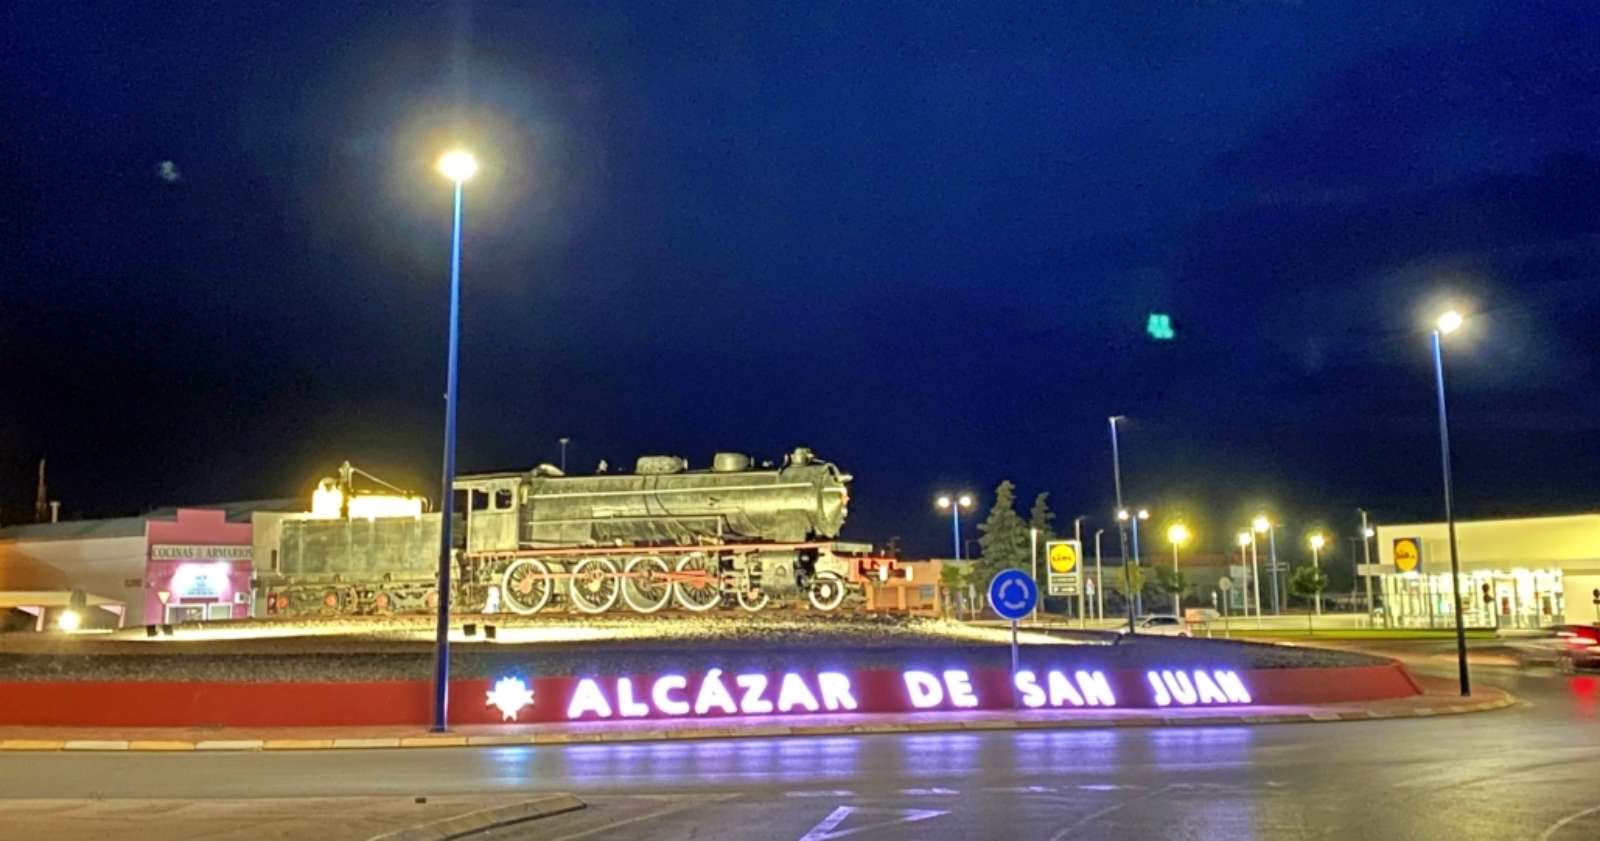 Letras luminosas para dar la bienvenida a Alcázar de San Juan